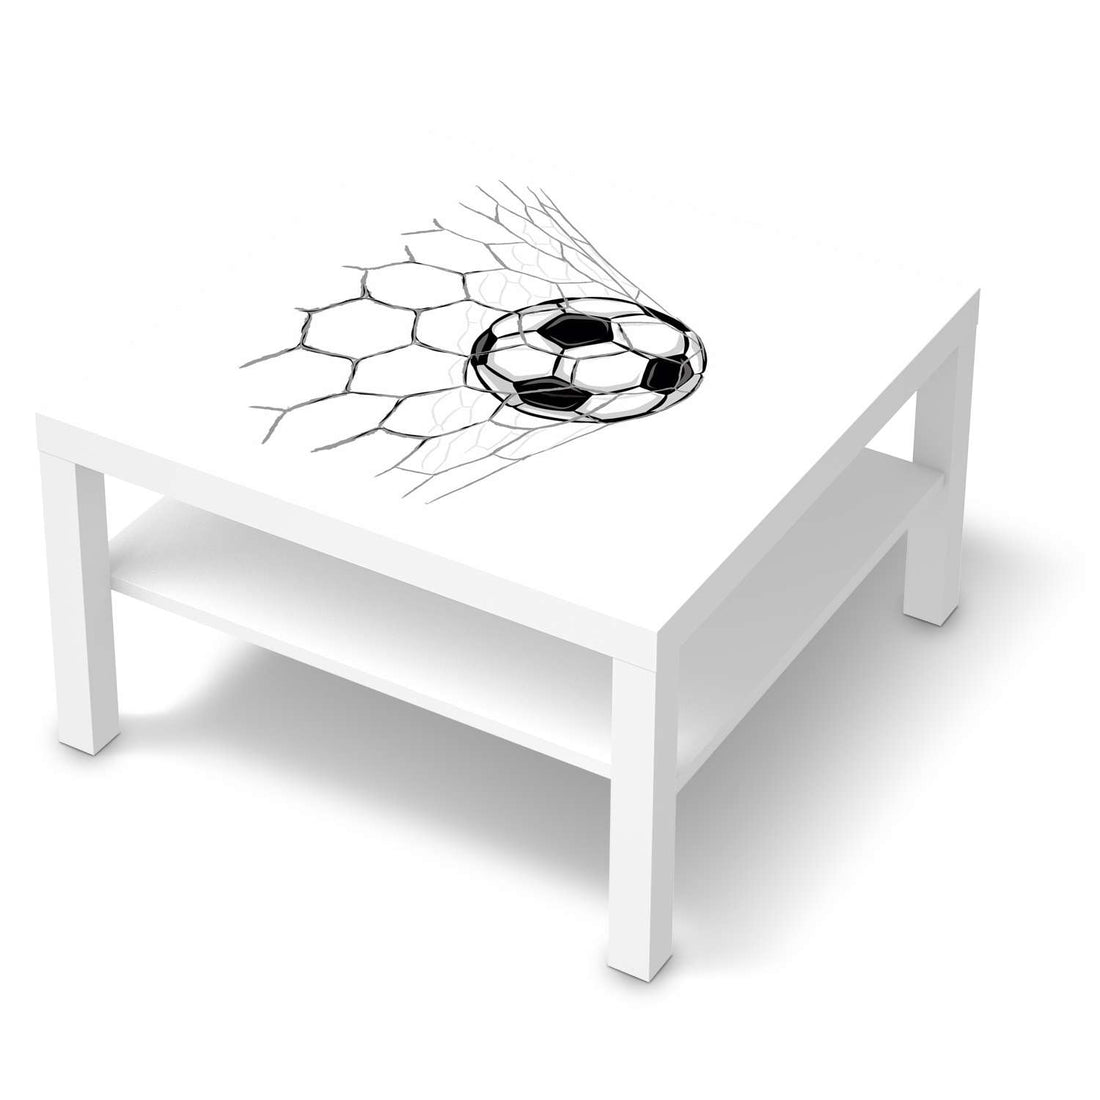 Selbstklebende Folie Eingenetzt - IKEA Lack Tisch 78x78 cm - weiss